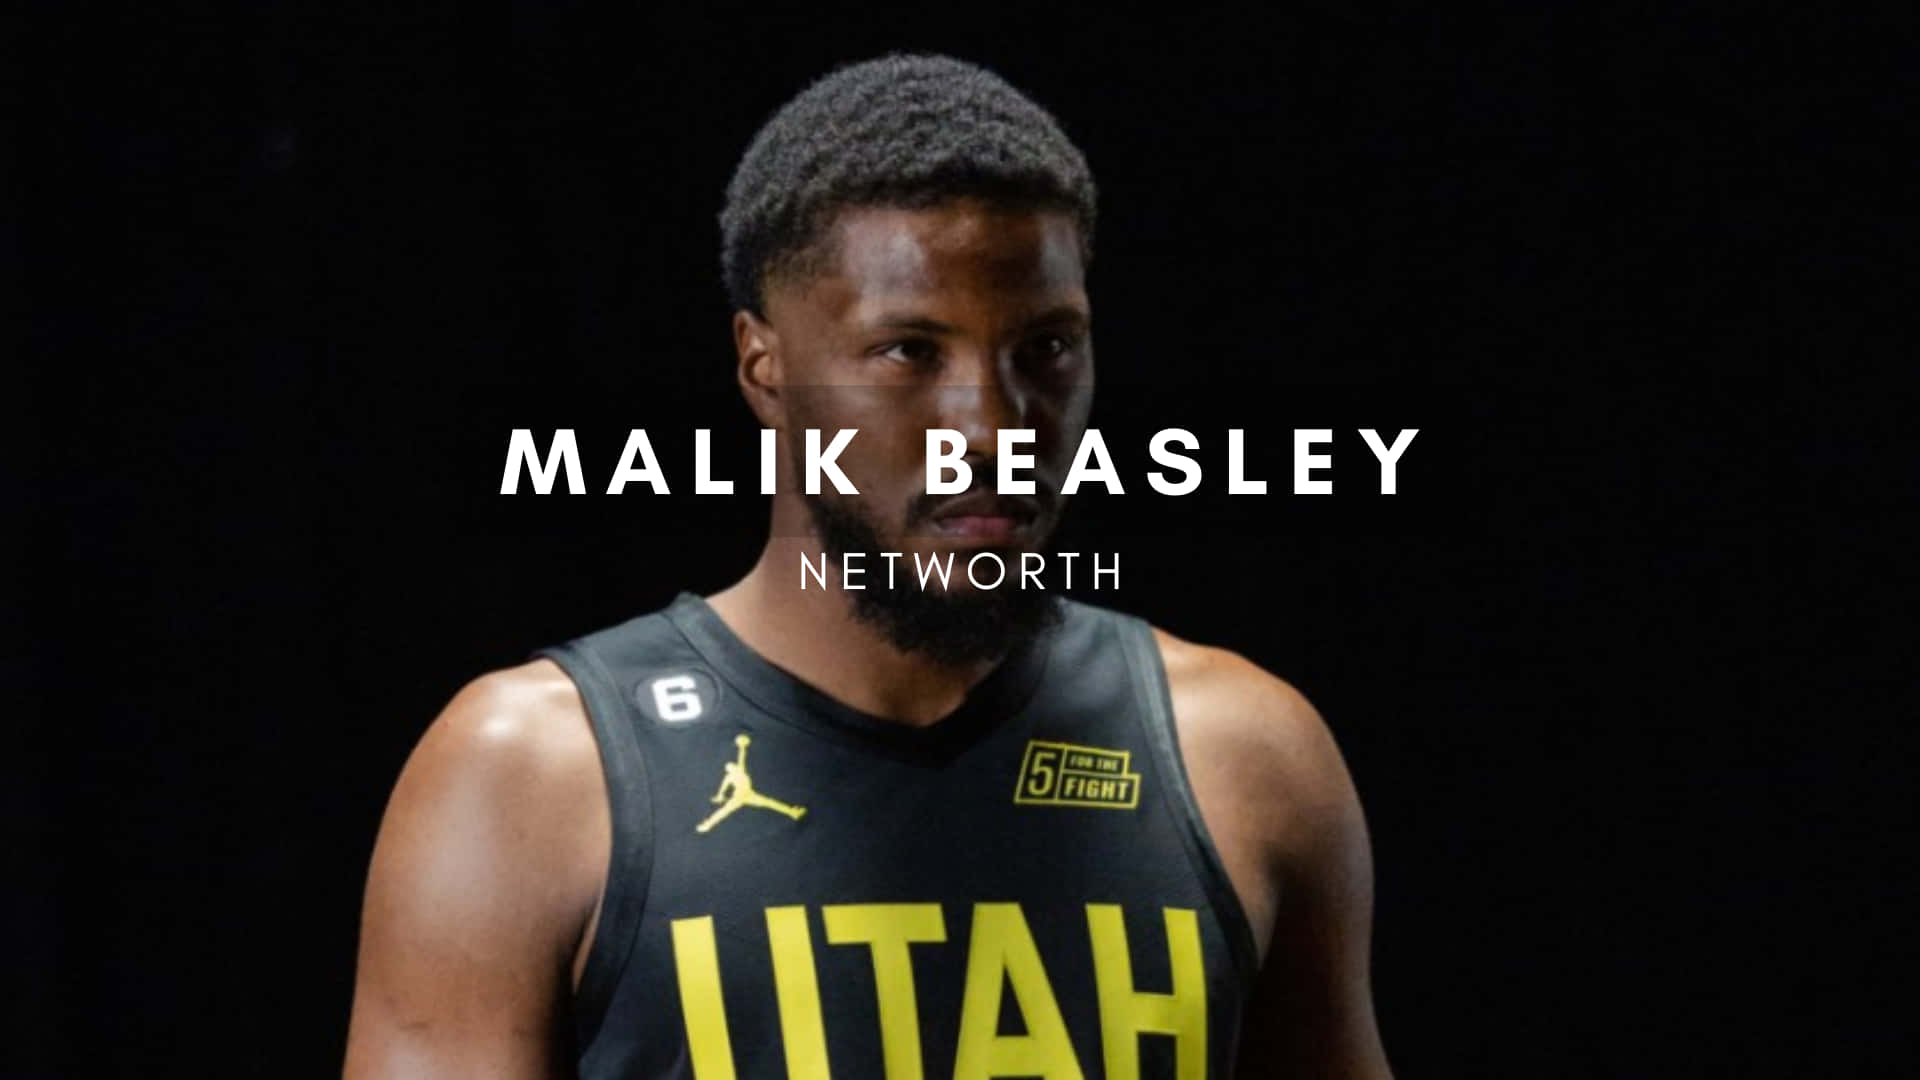 Jugadorprofesional De Baloncesto Estadounidense Malik Beasley, Póster De Valor Neto Fondo de pantalla